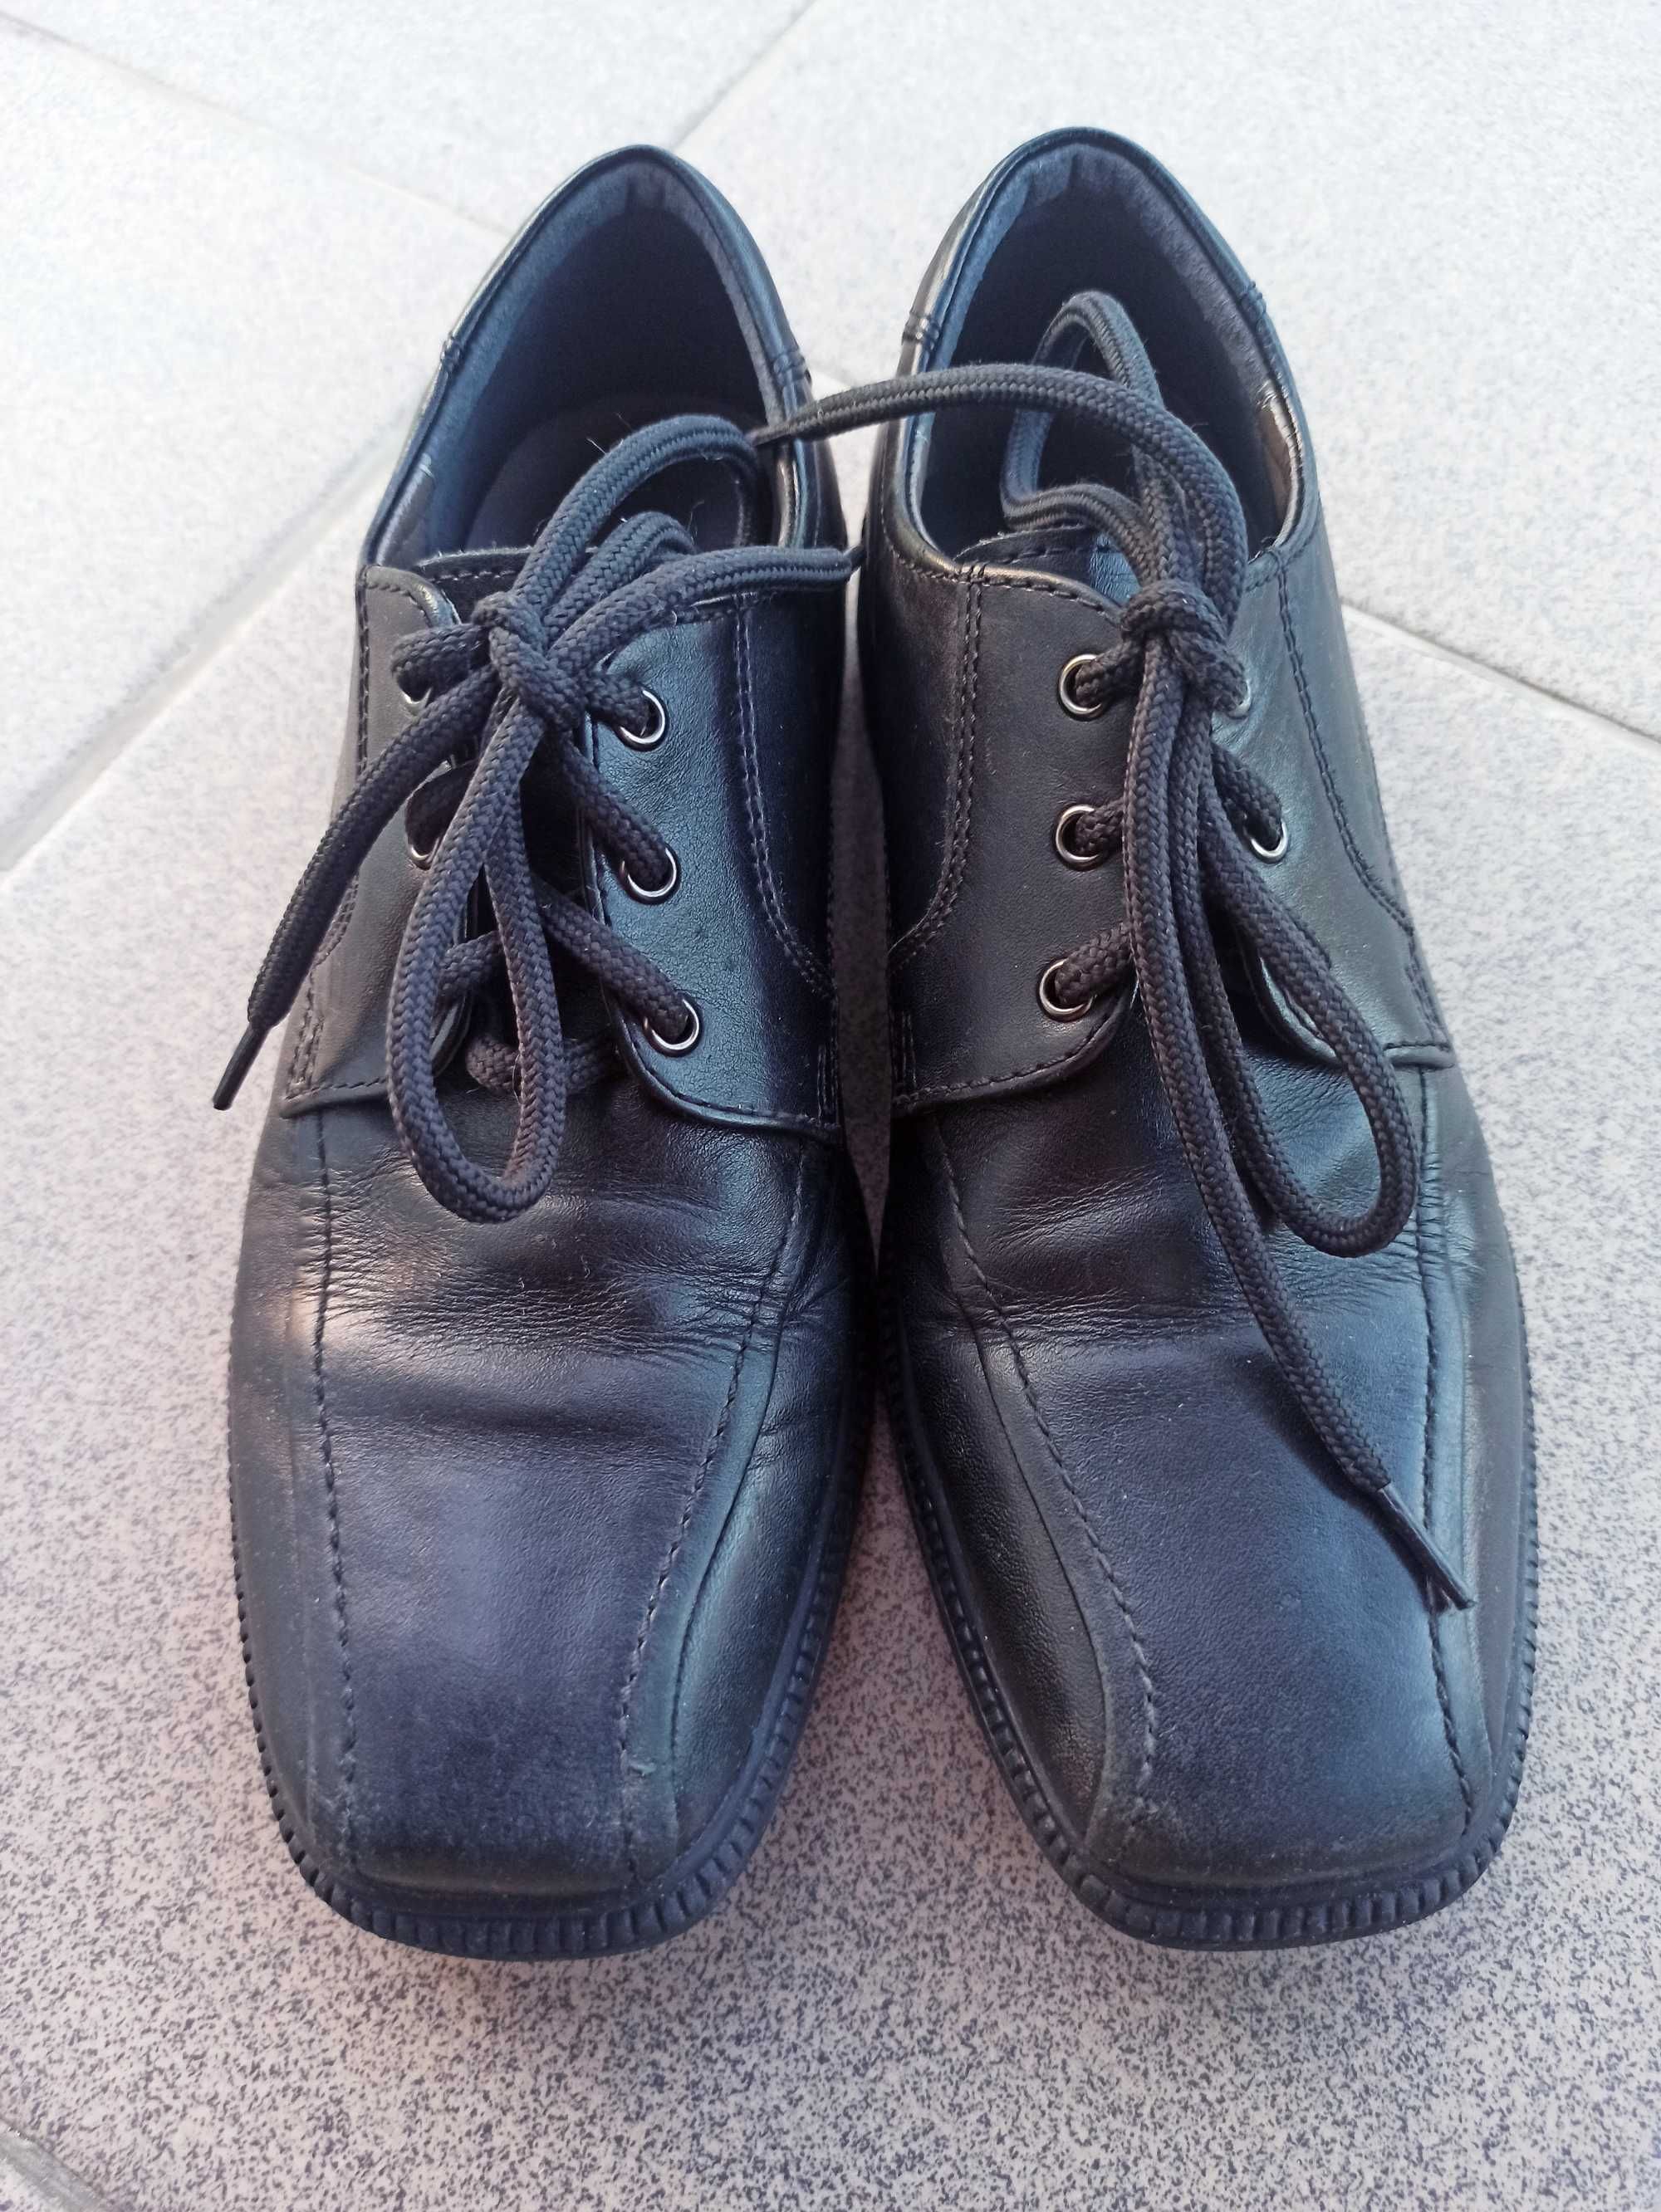 Продам кожаные чёрные туфли Geox 33 р. Стелька 21.5 - 22 см